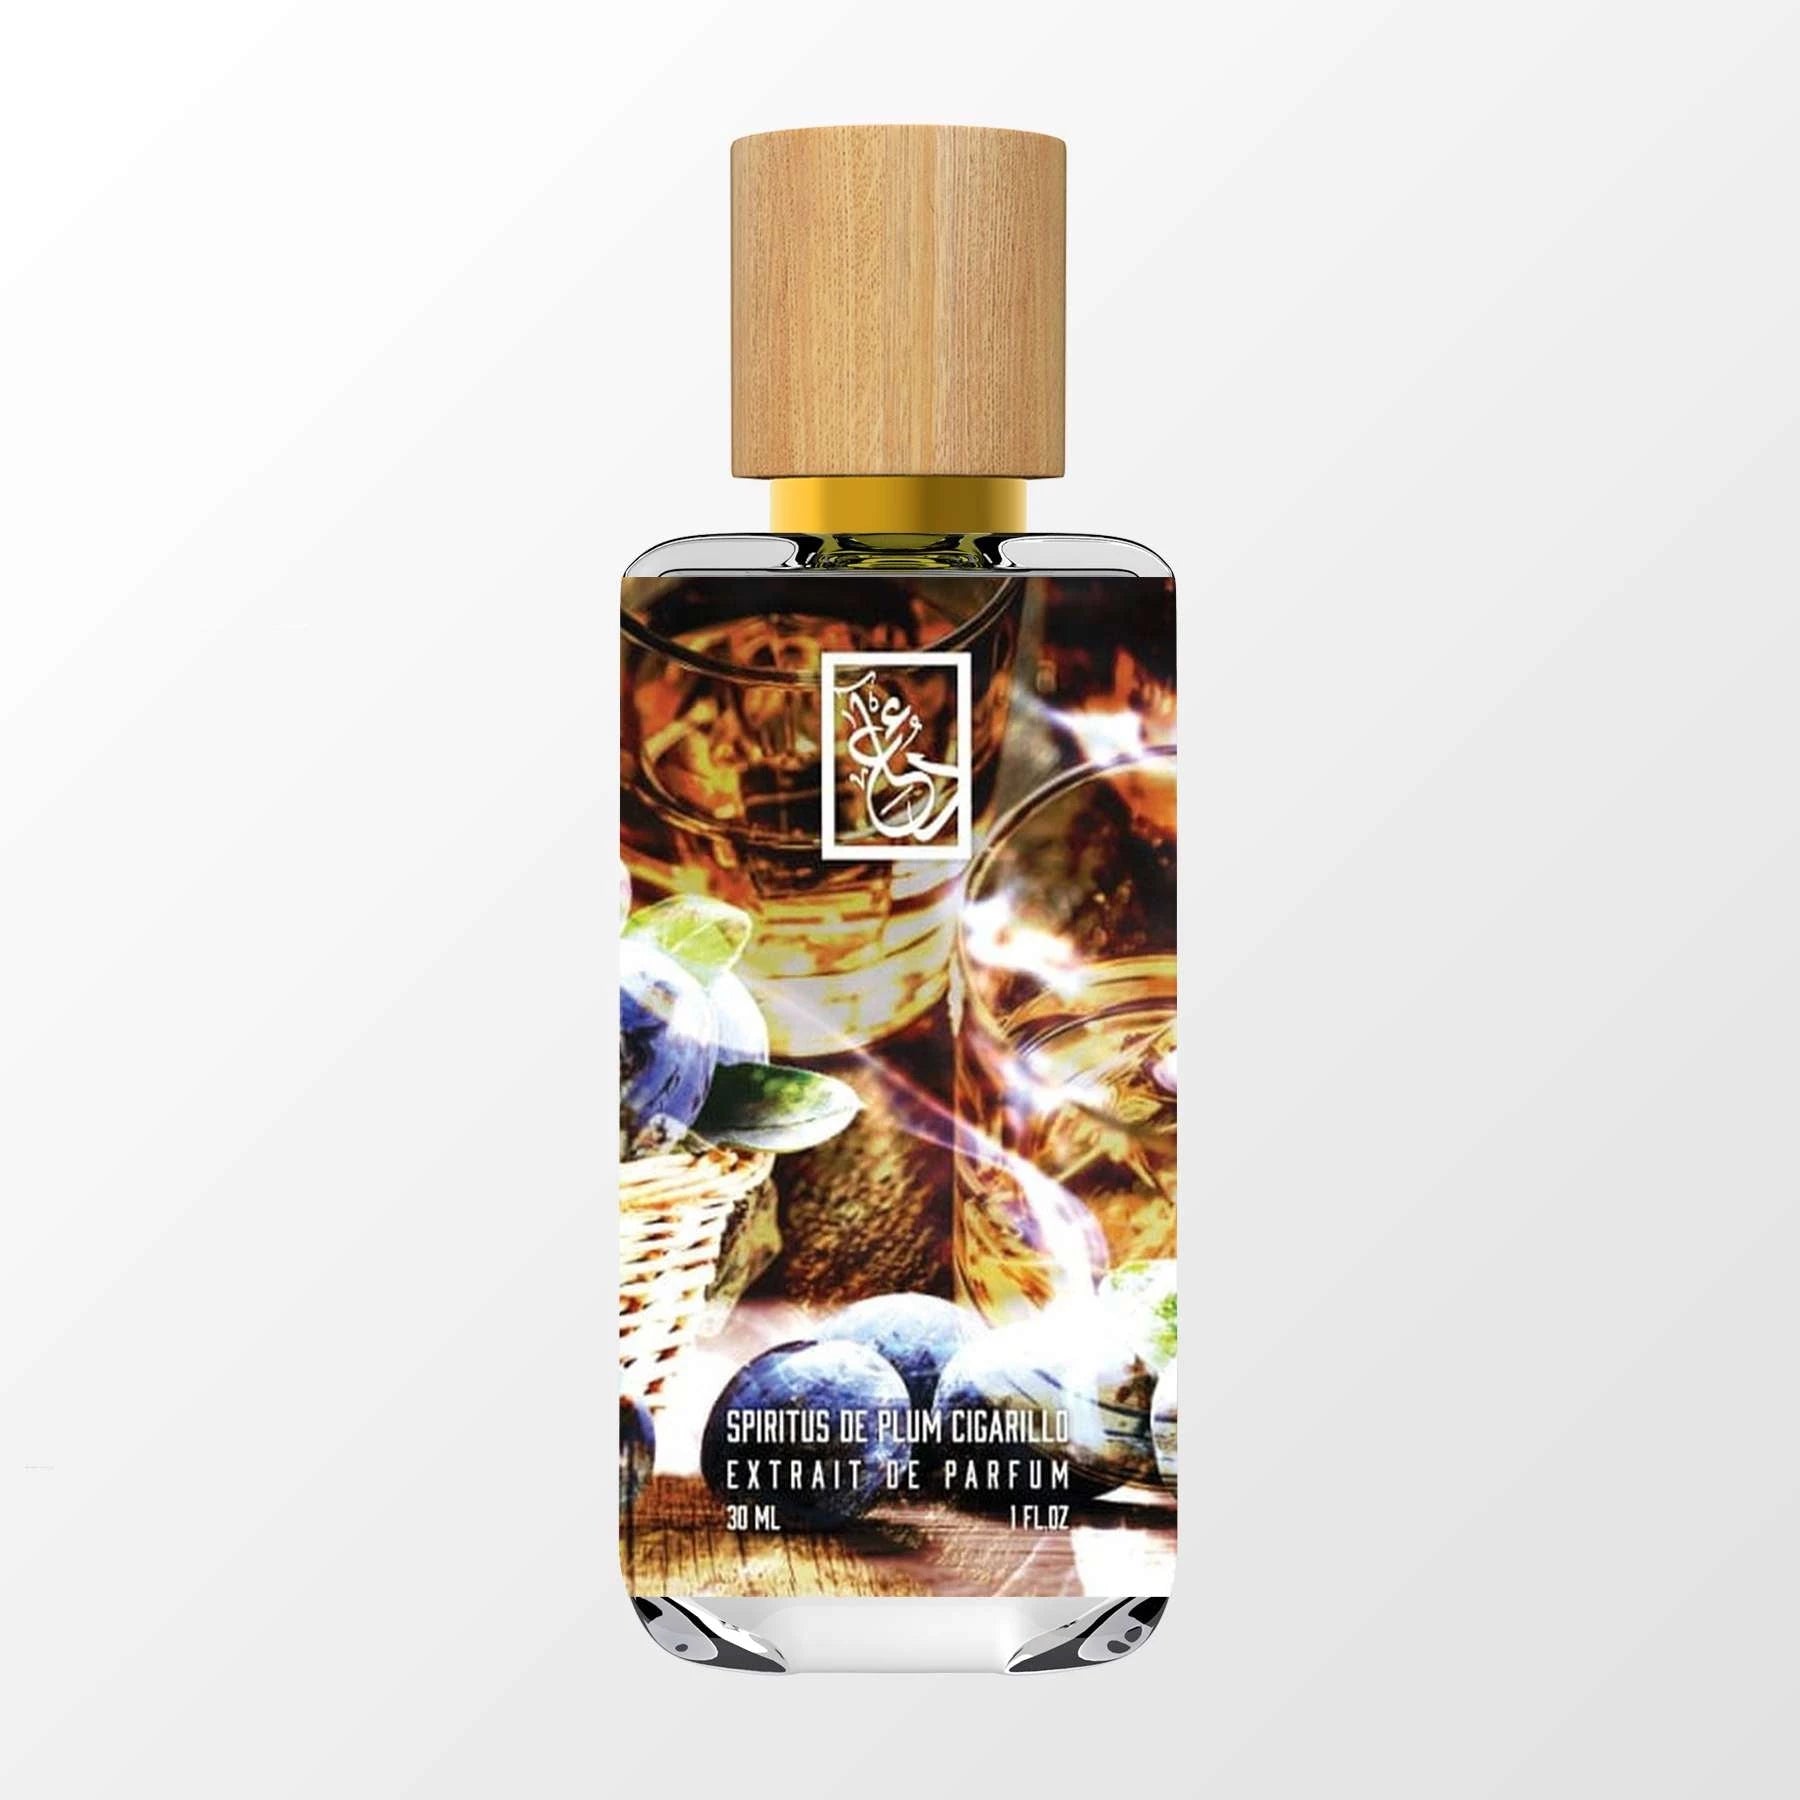 Spiritus De Plum Cigarillo - DUA FRAGRANCES - Amber - Unisex Perfume - 34ml/1.1  FL OZ - Extrait De Parfum